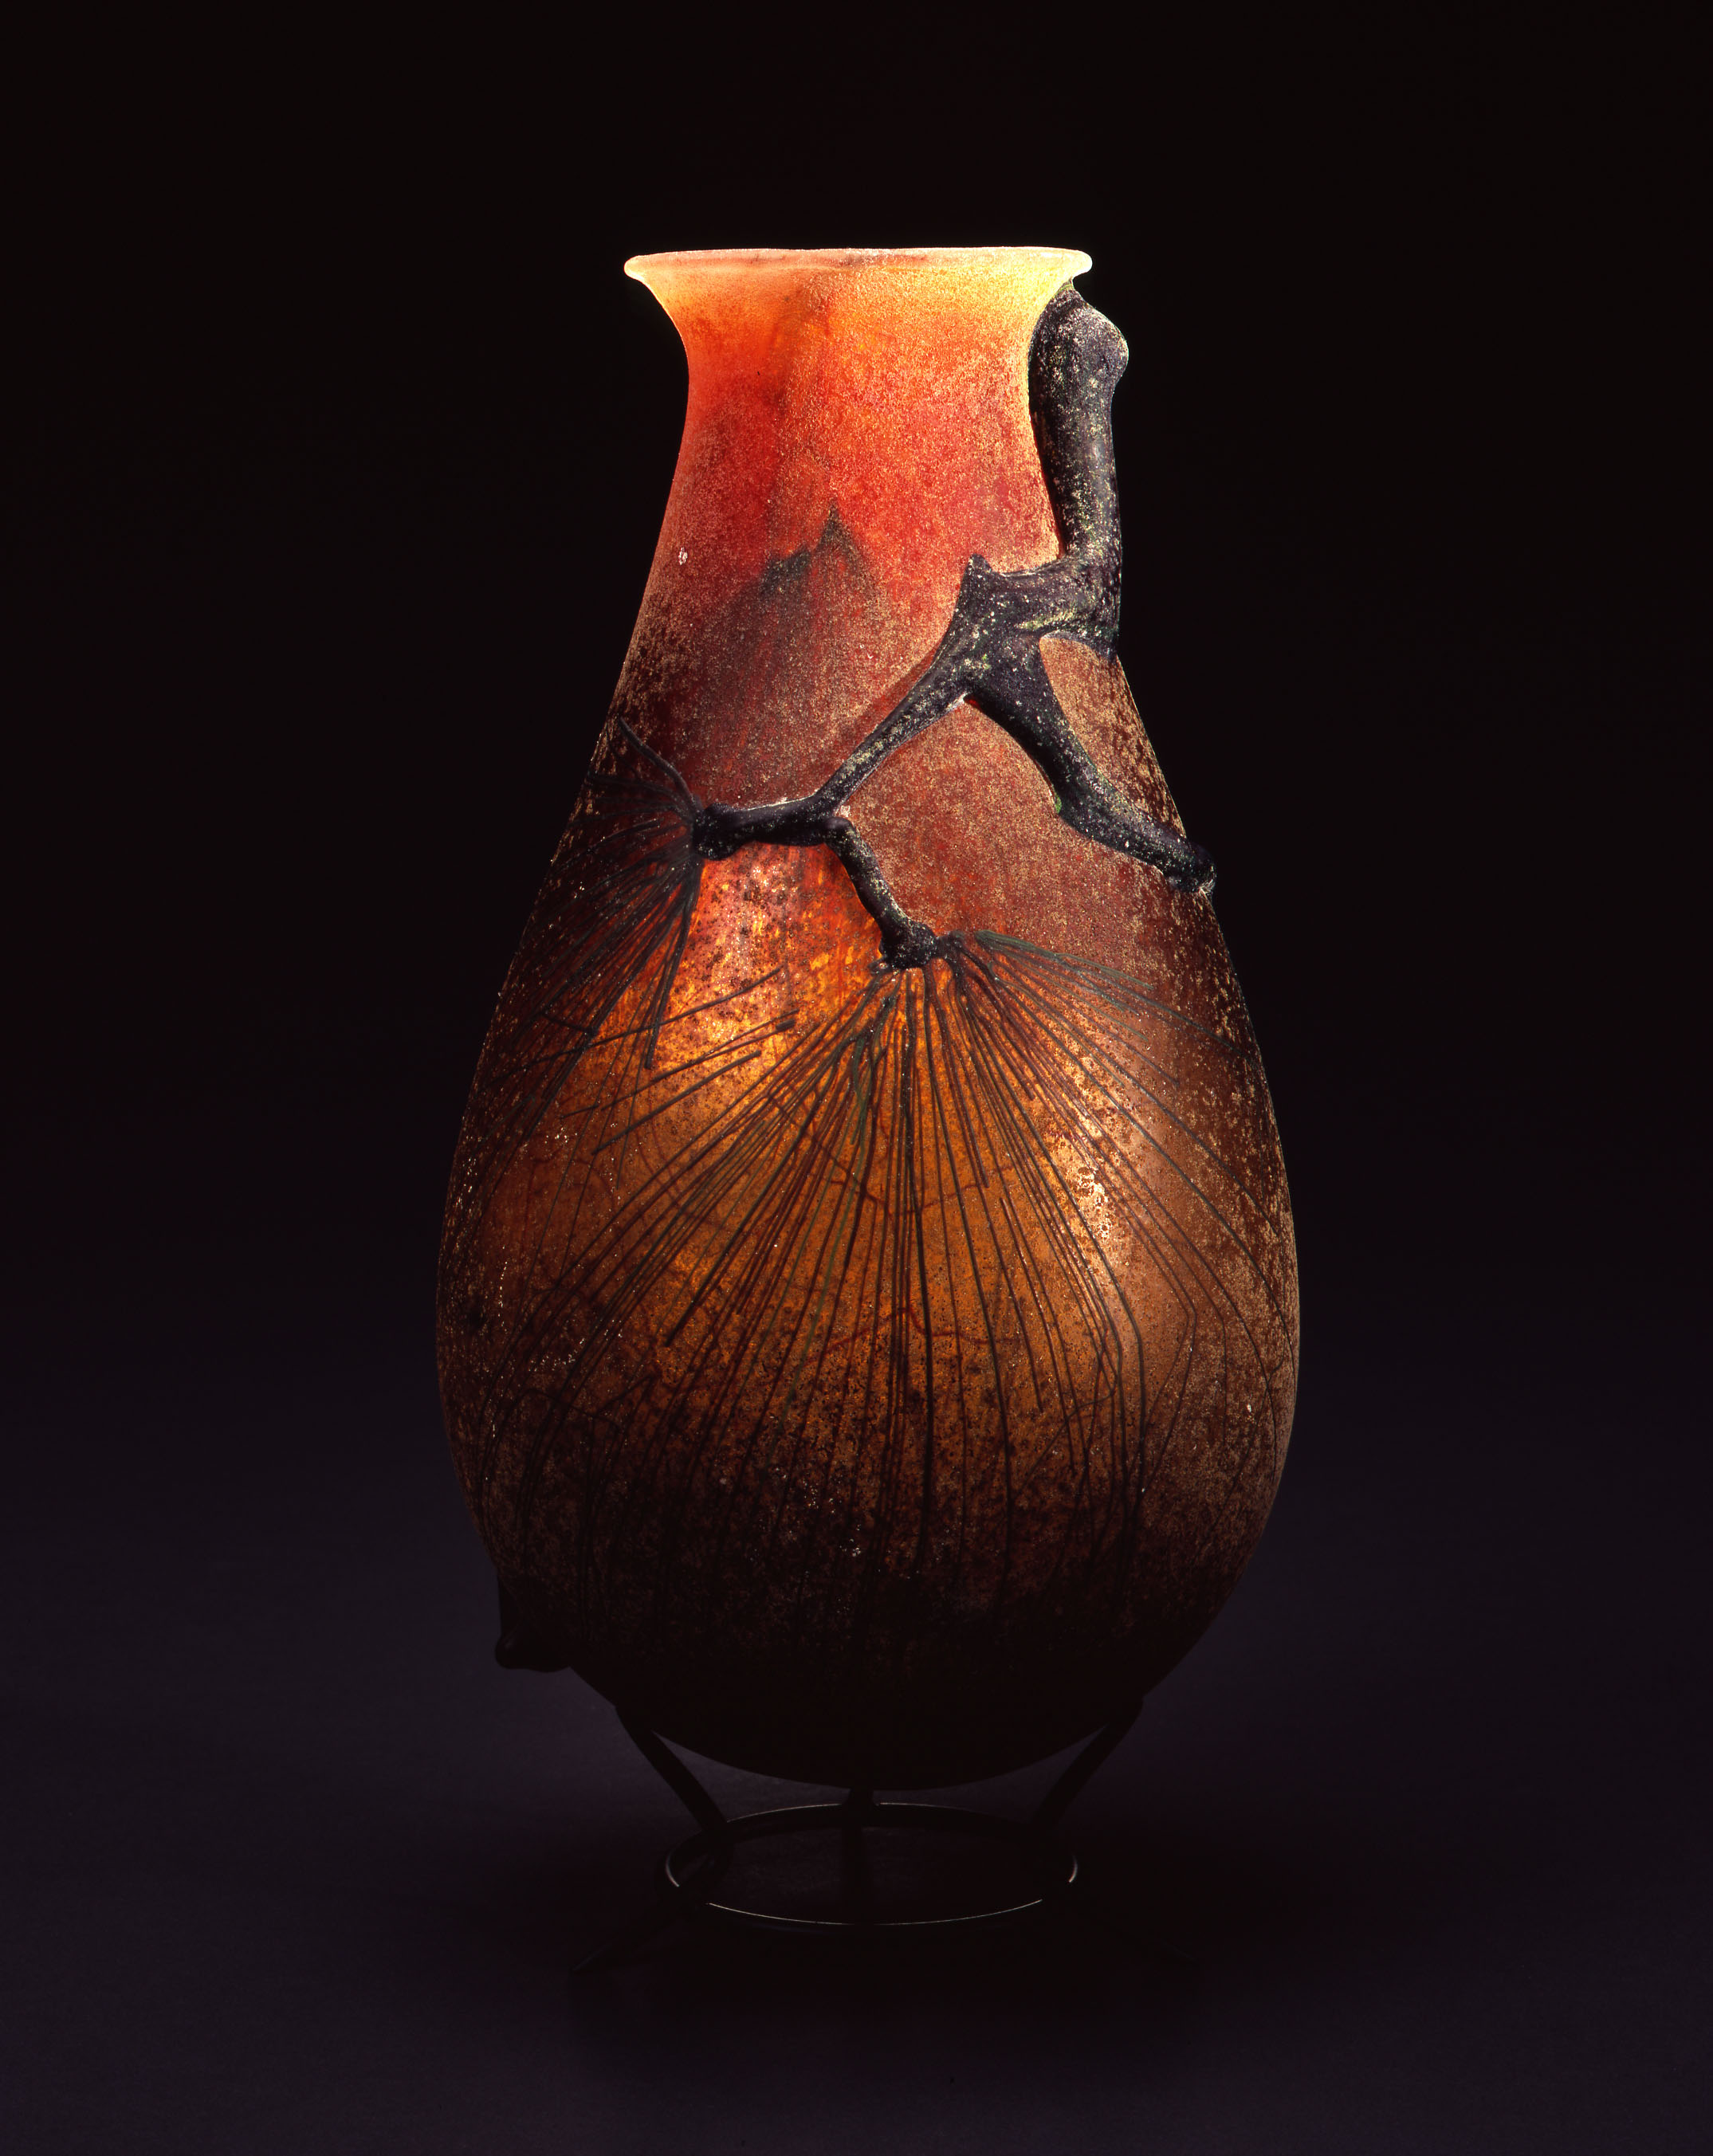  William Morris,&nbsp; Vase with Ponderosa Pine Boughs&nbsp; (2004, glass, 14 x 6 3/4 x 6 3/4 inches), WM.42 